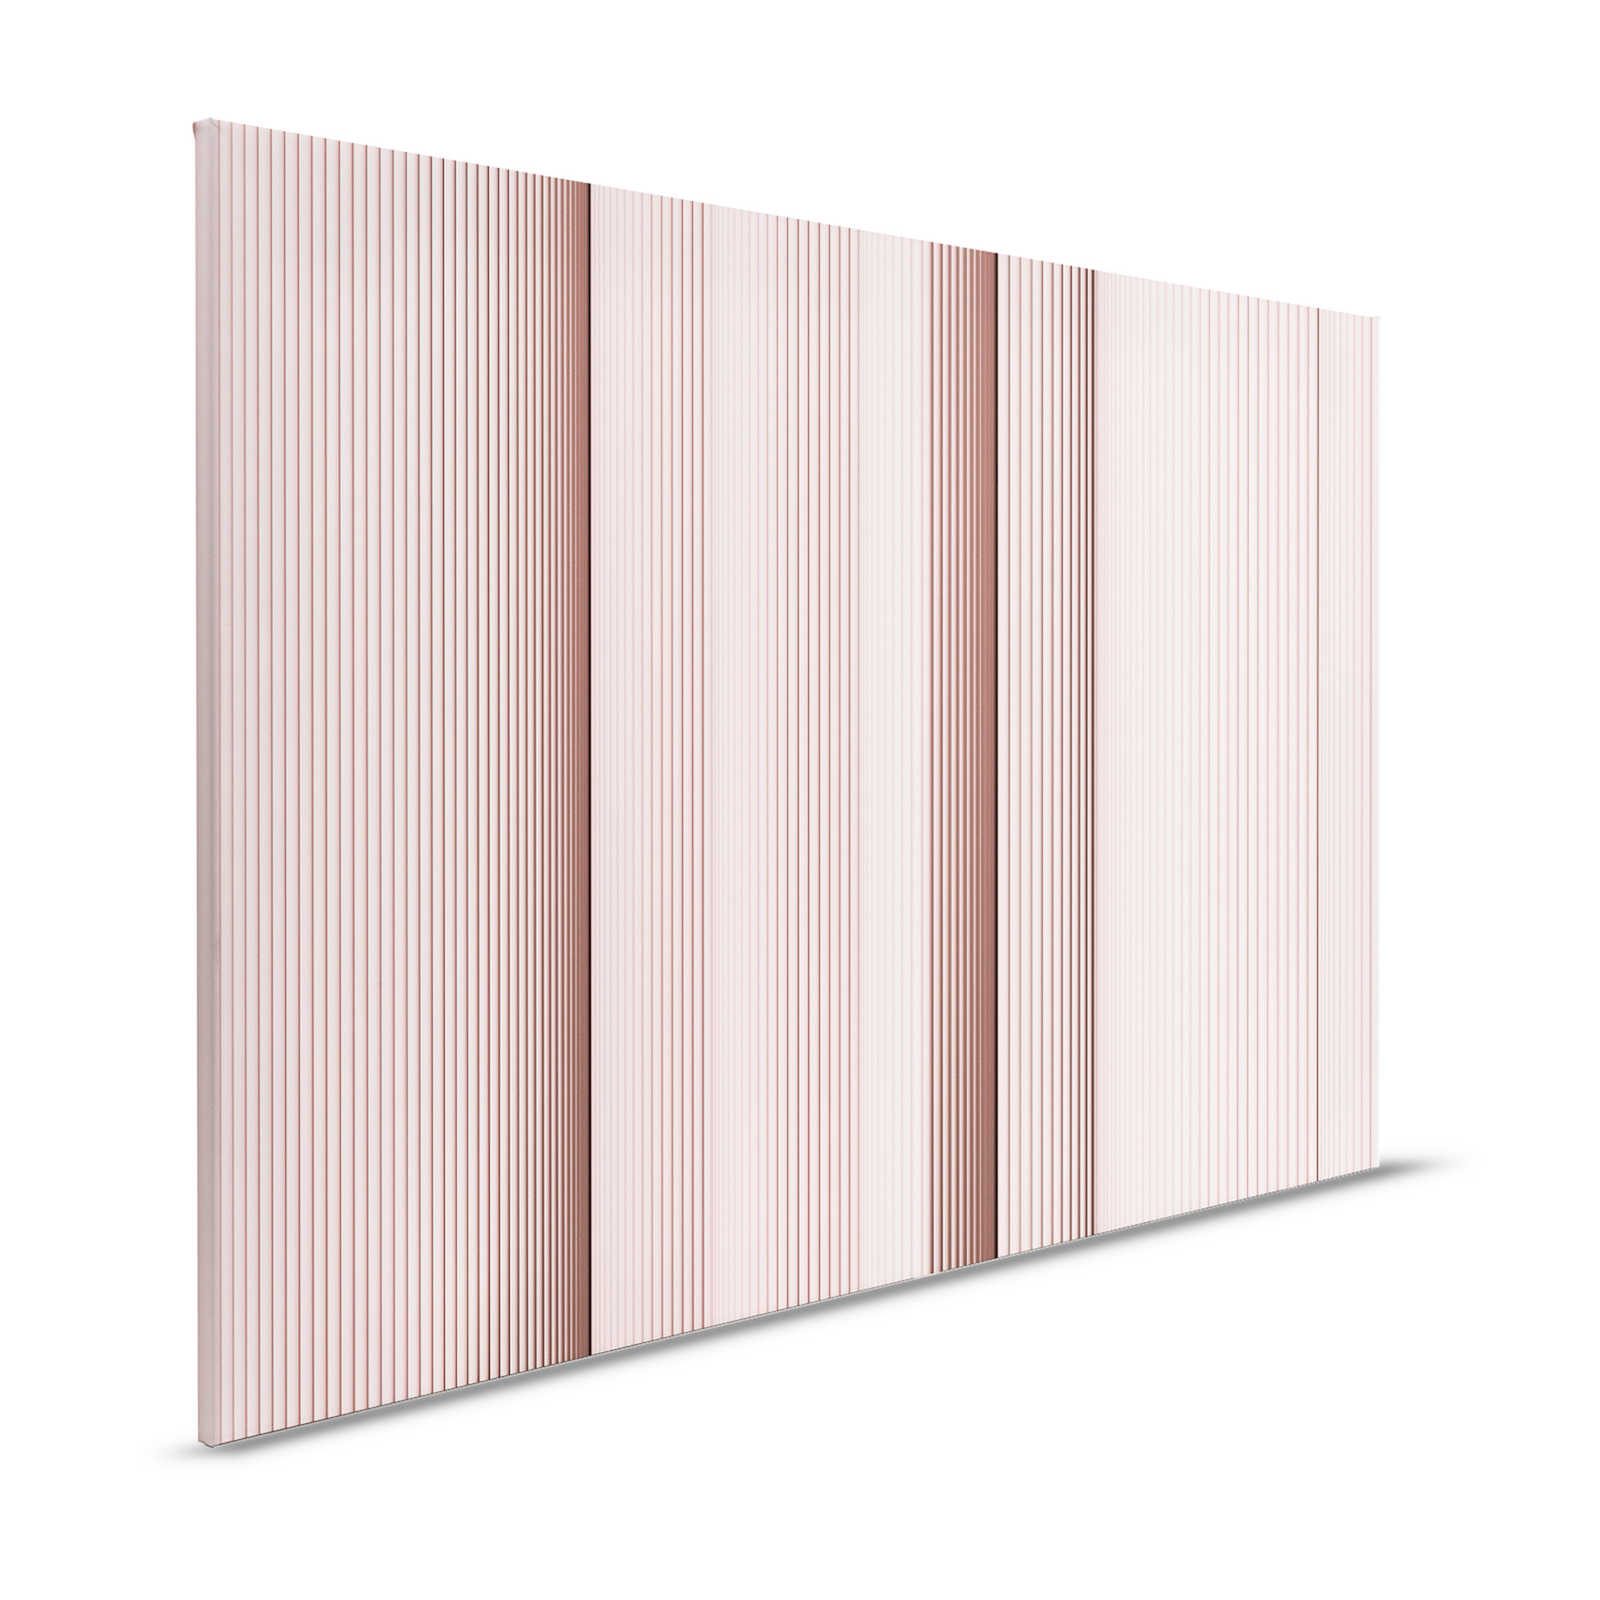 Magic Wall 4 - toile à rayures avec effet d'illusion 3D, rose et blanc - 1,20 m x 0,80 m
